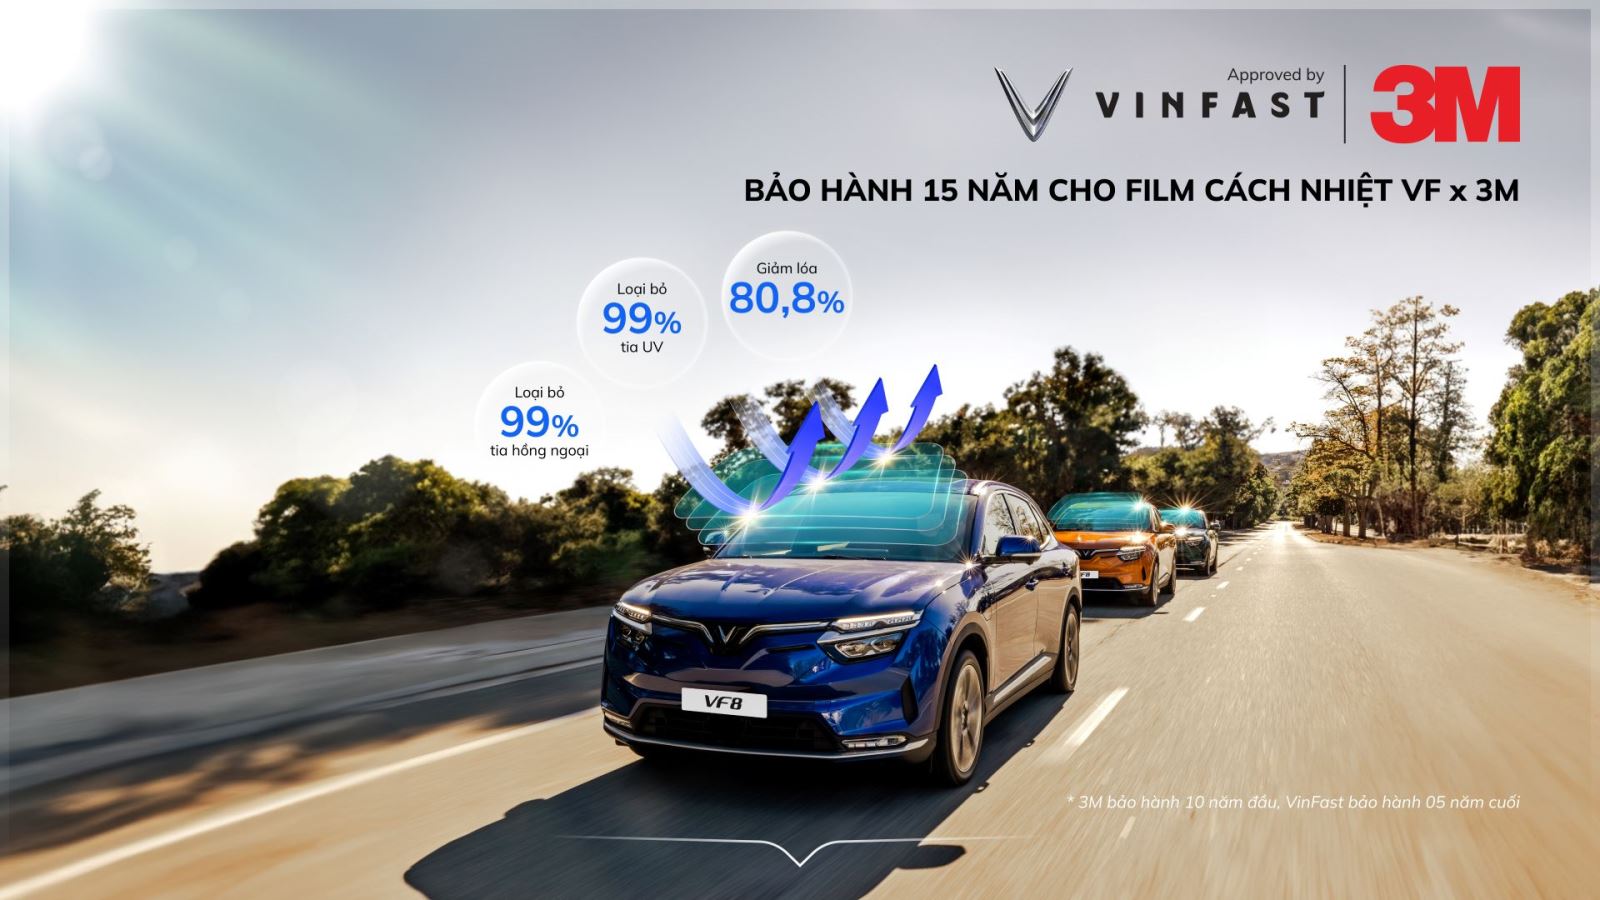 Phim cách nhiệt 3M dành riêng cho xe VinFast có nhiều ưu điểm vượt trội, phù hợp với đặc tính ô tô điện.